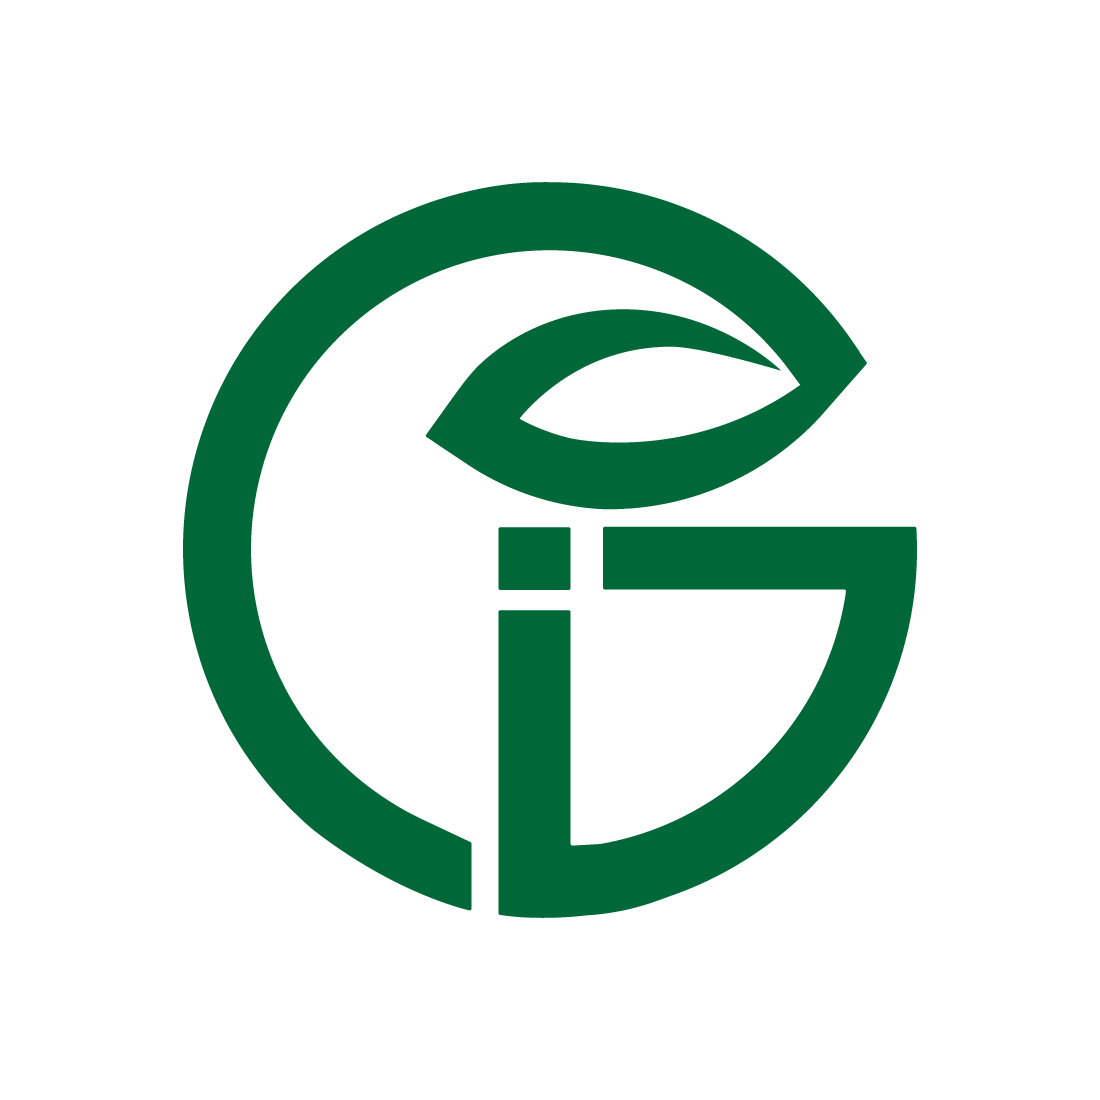 Initials GI letters logo design vector images GI Green Leaf logo design GI logo best icon template illustration Leaf best icon design preview image.